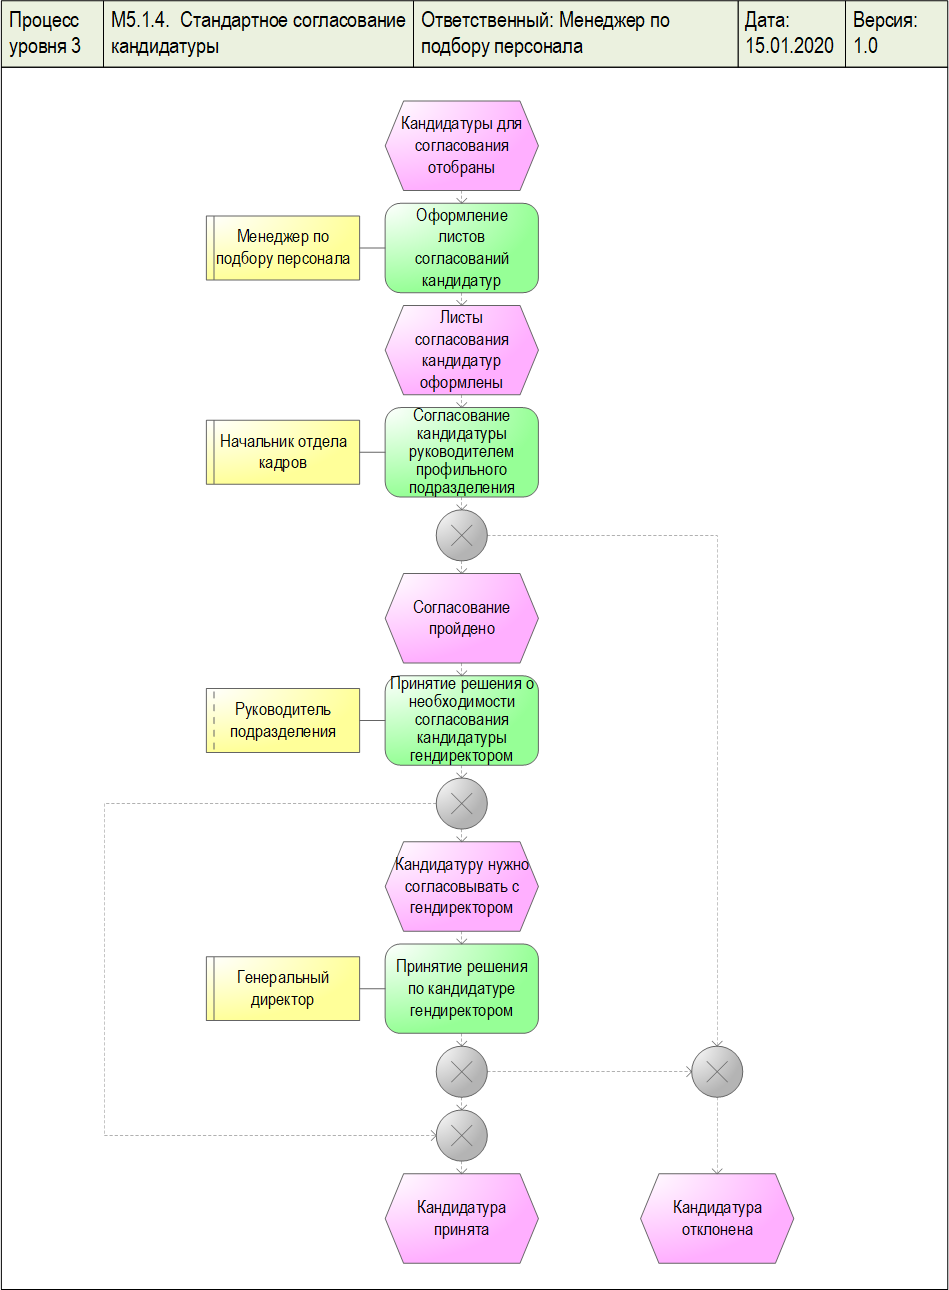 Диаграмма процесса "Стандартное согласование кандидатуры", разработанная с помощью графической диаграммы "ARIS EPC" в системе Бизнес-инженер